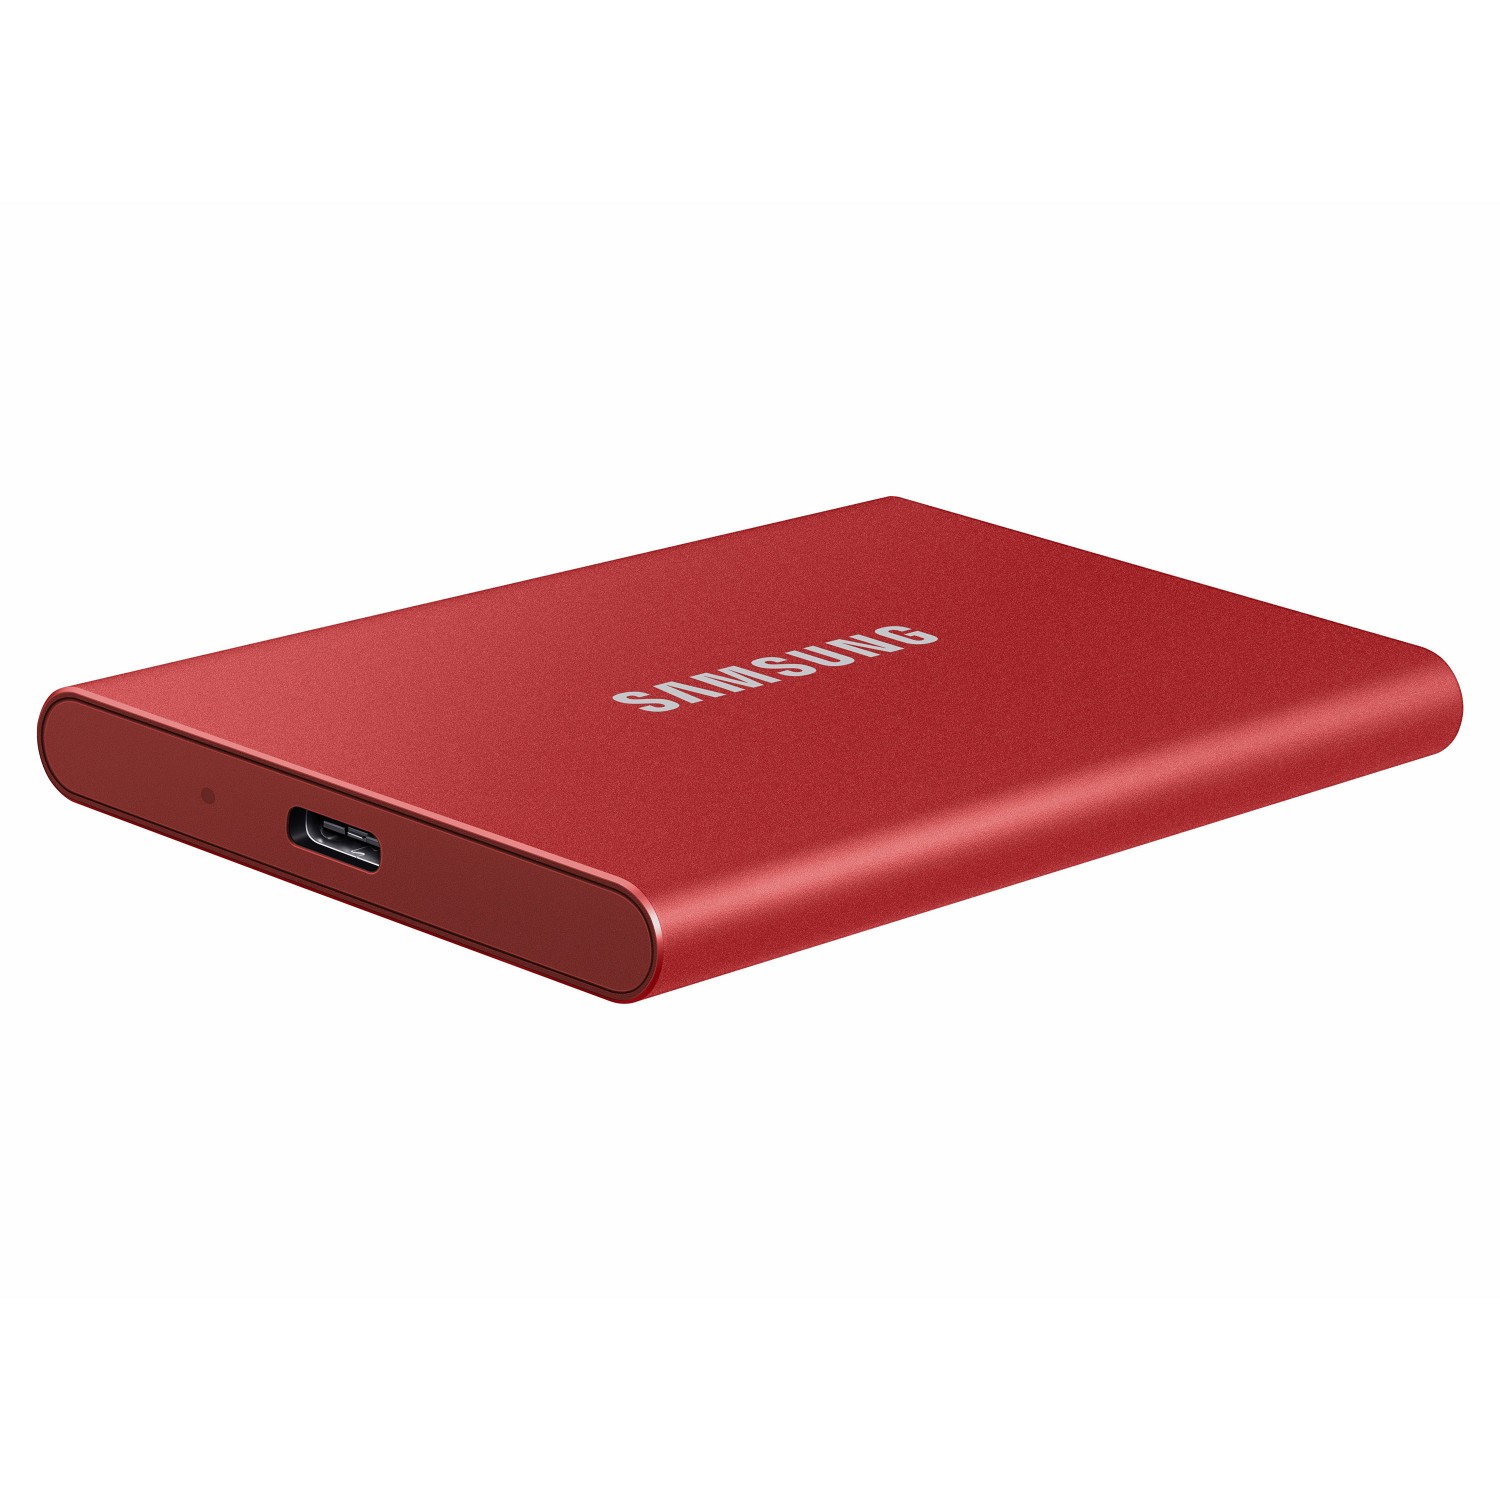 حافظه اس اس دی اکسترنال SAMSUNG T7 2TB - Metallic Red-3